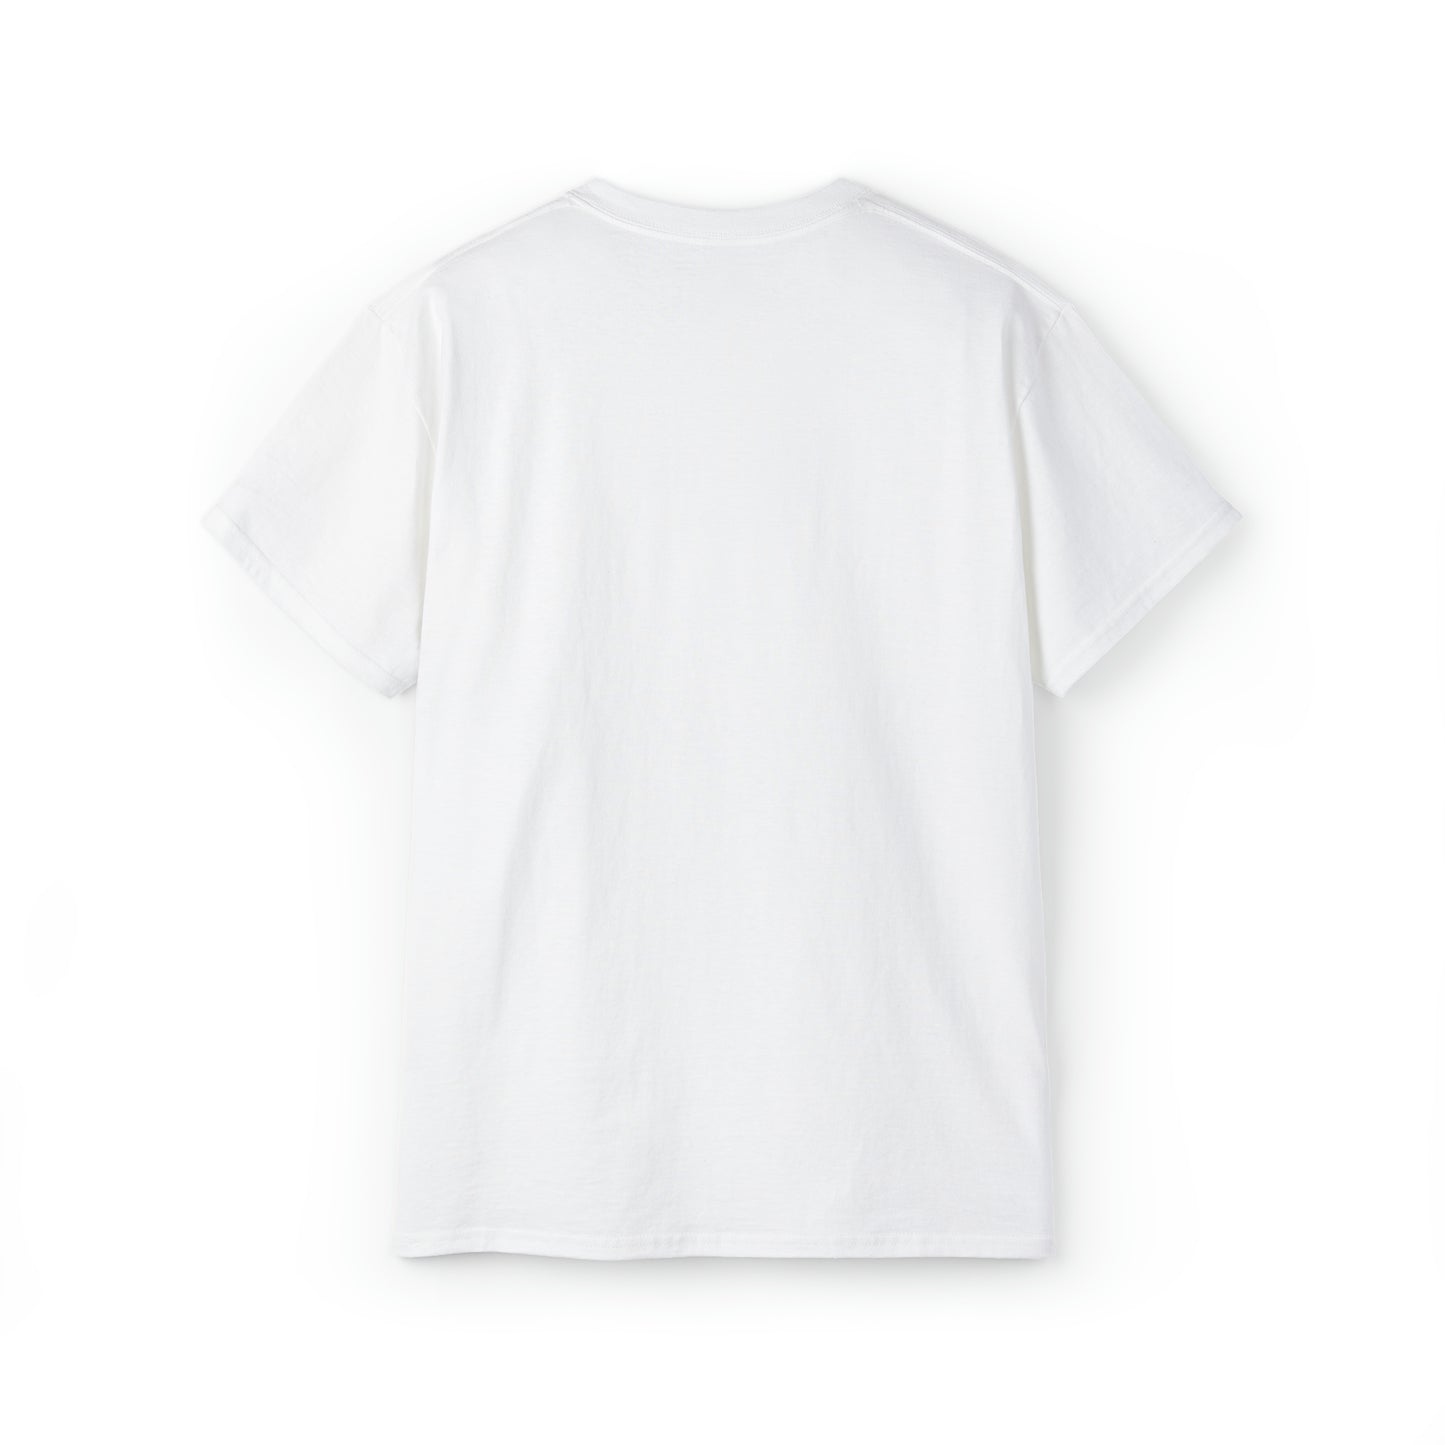 Sin juegos, sin vida. Camiseta unisex de ultra algodón.